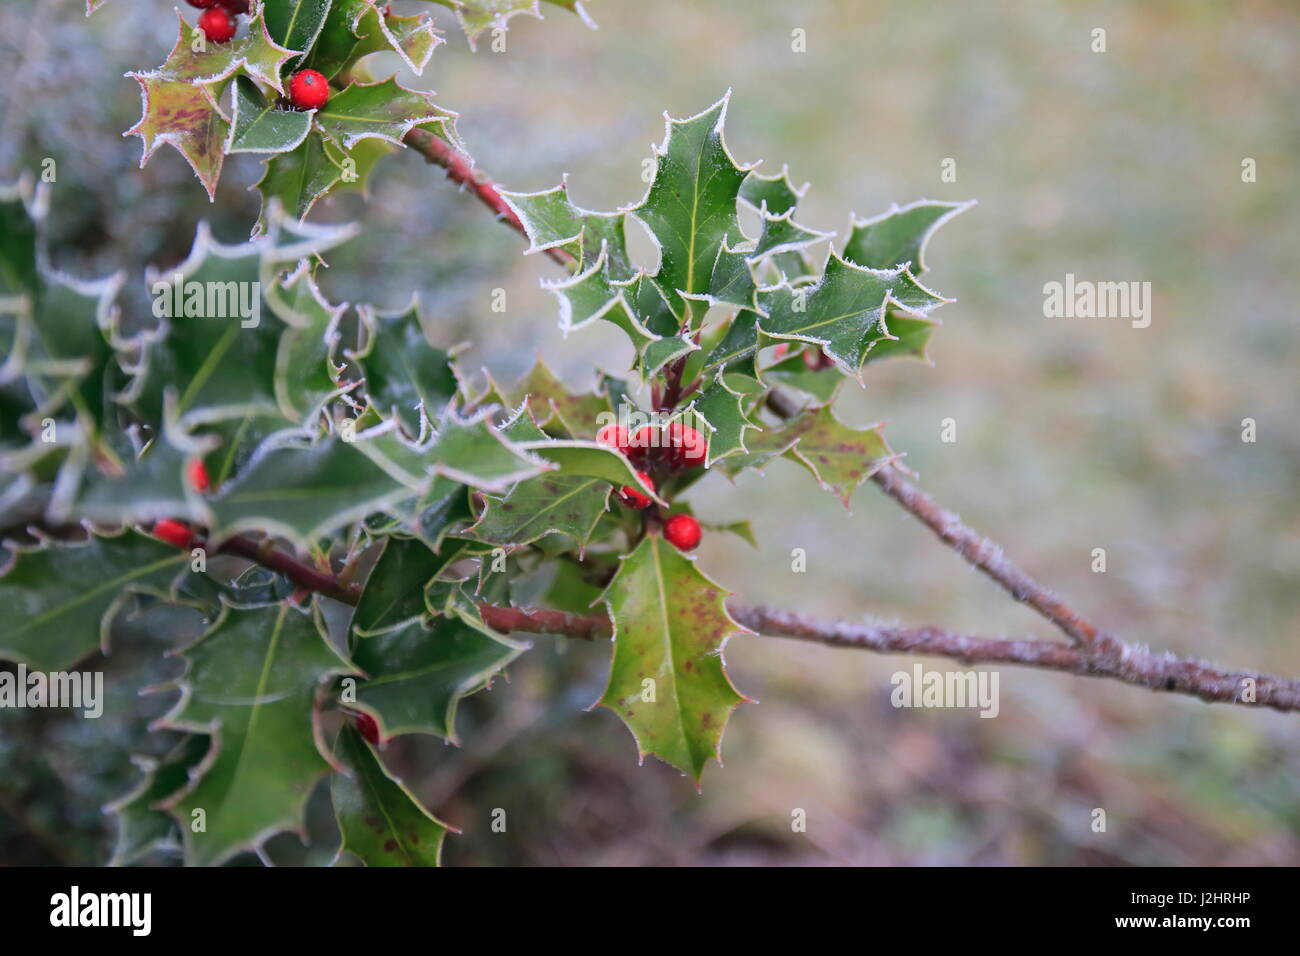 Stechpalme Ilex mit roten Beeren und Rauhreif an den stacheligen Blättern Stock Photo